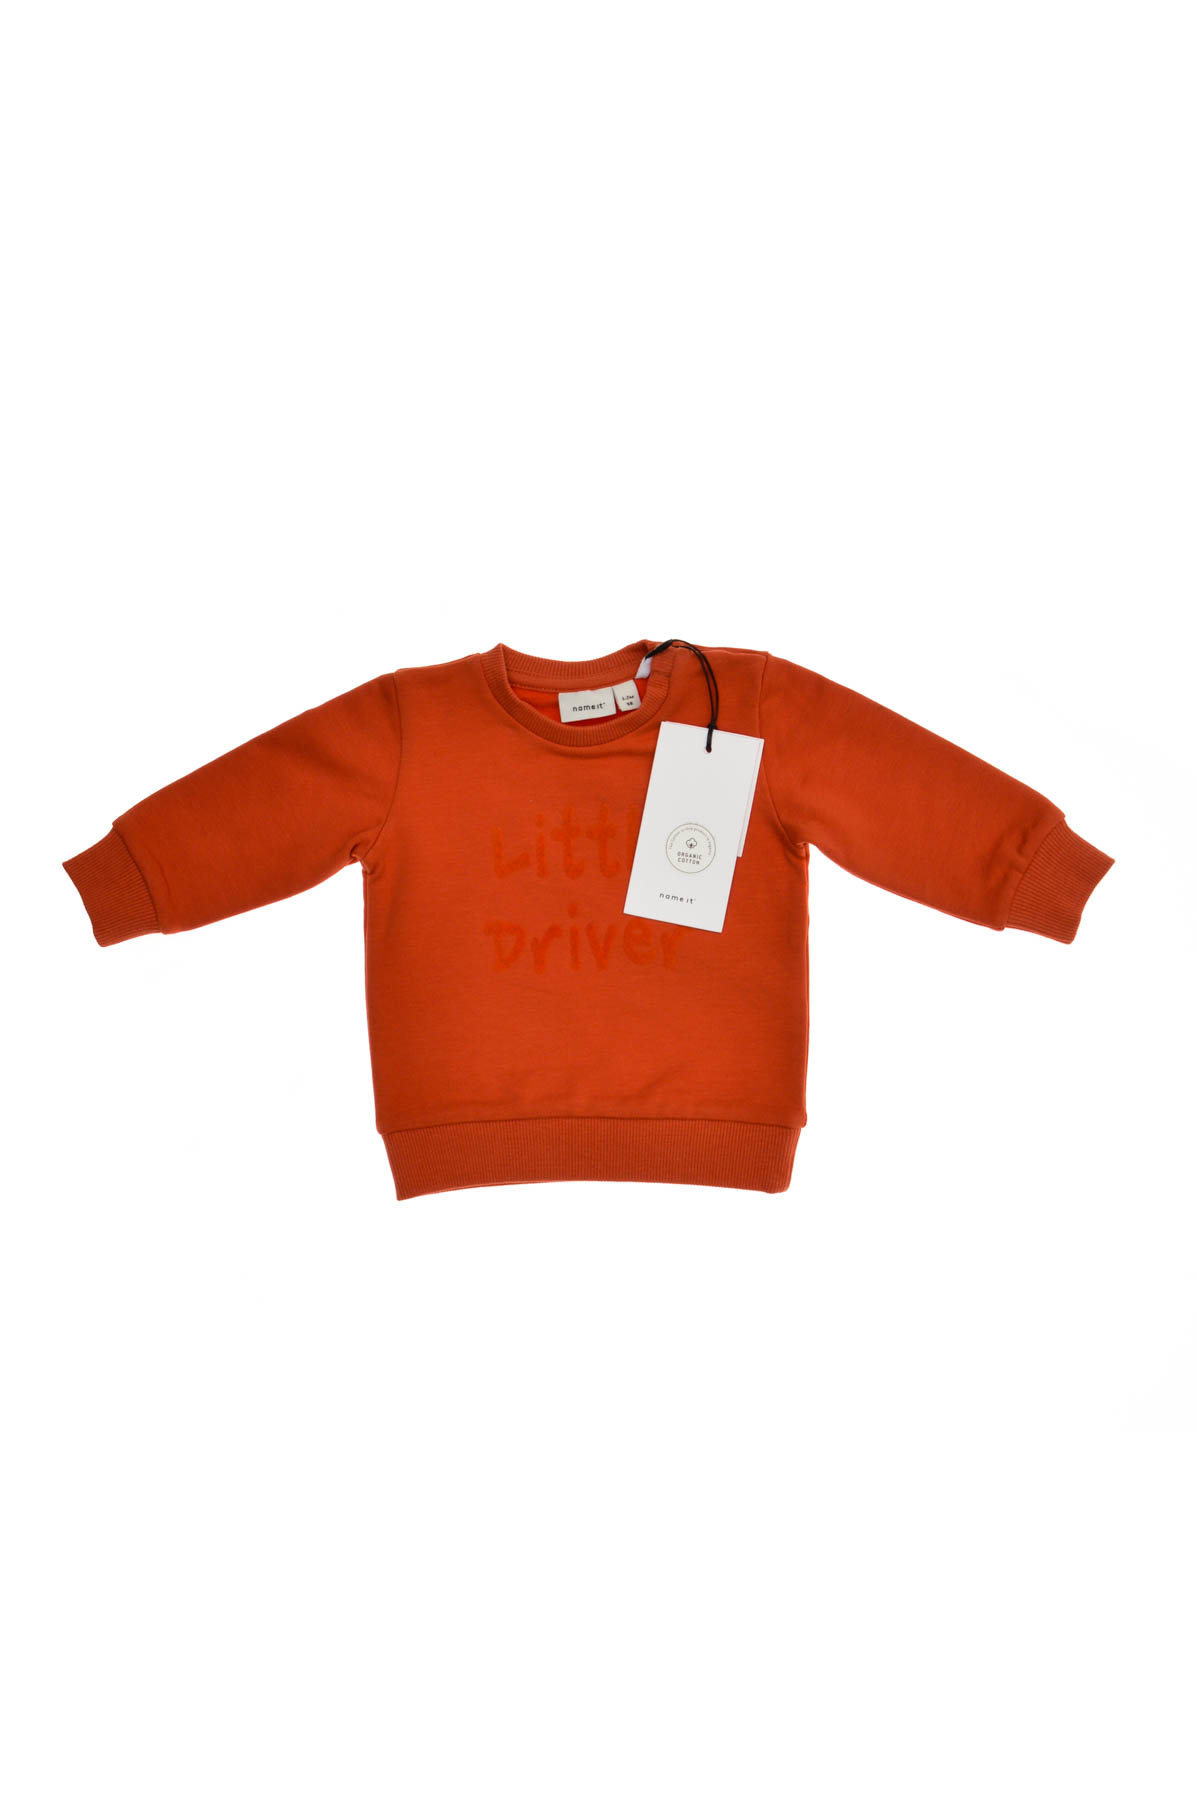 Bluza pentru bebeluș băiat - Name It - 0